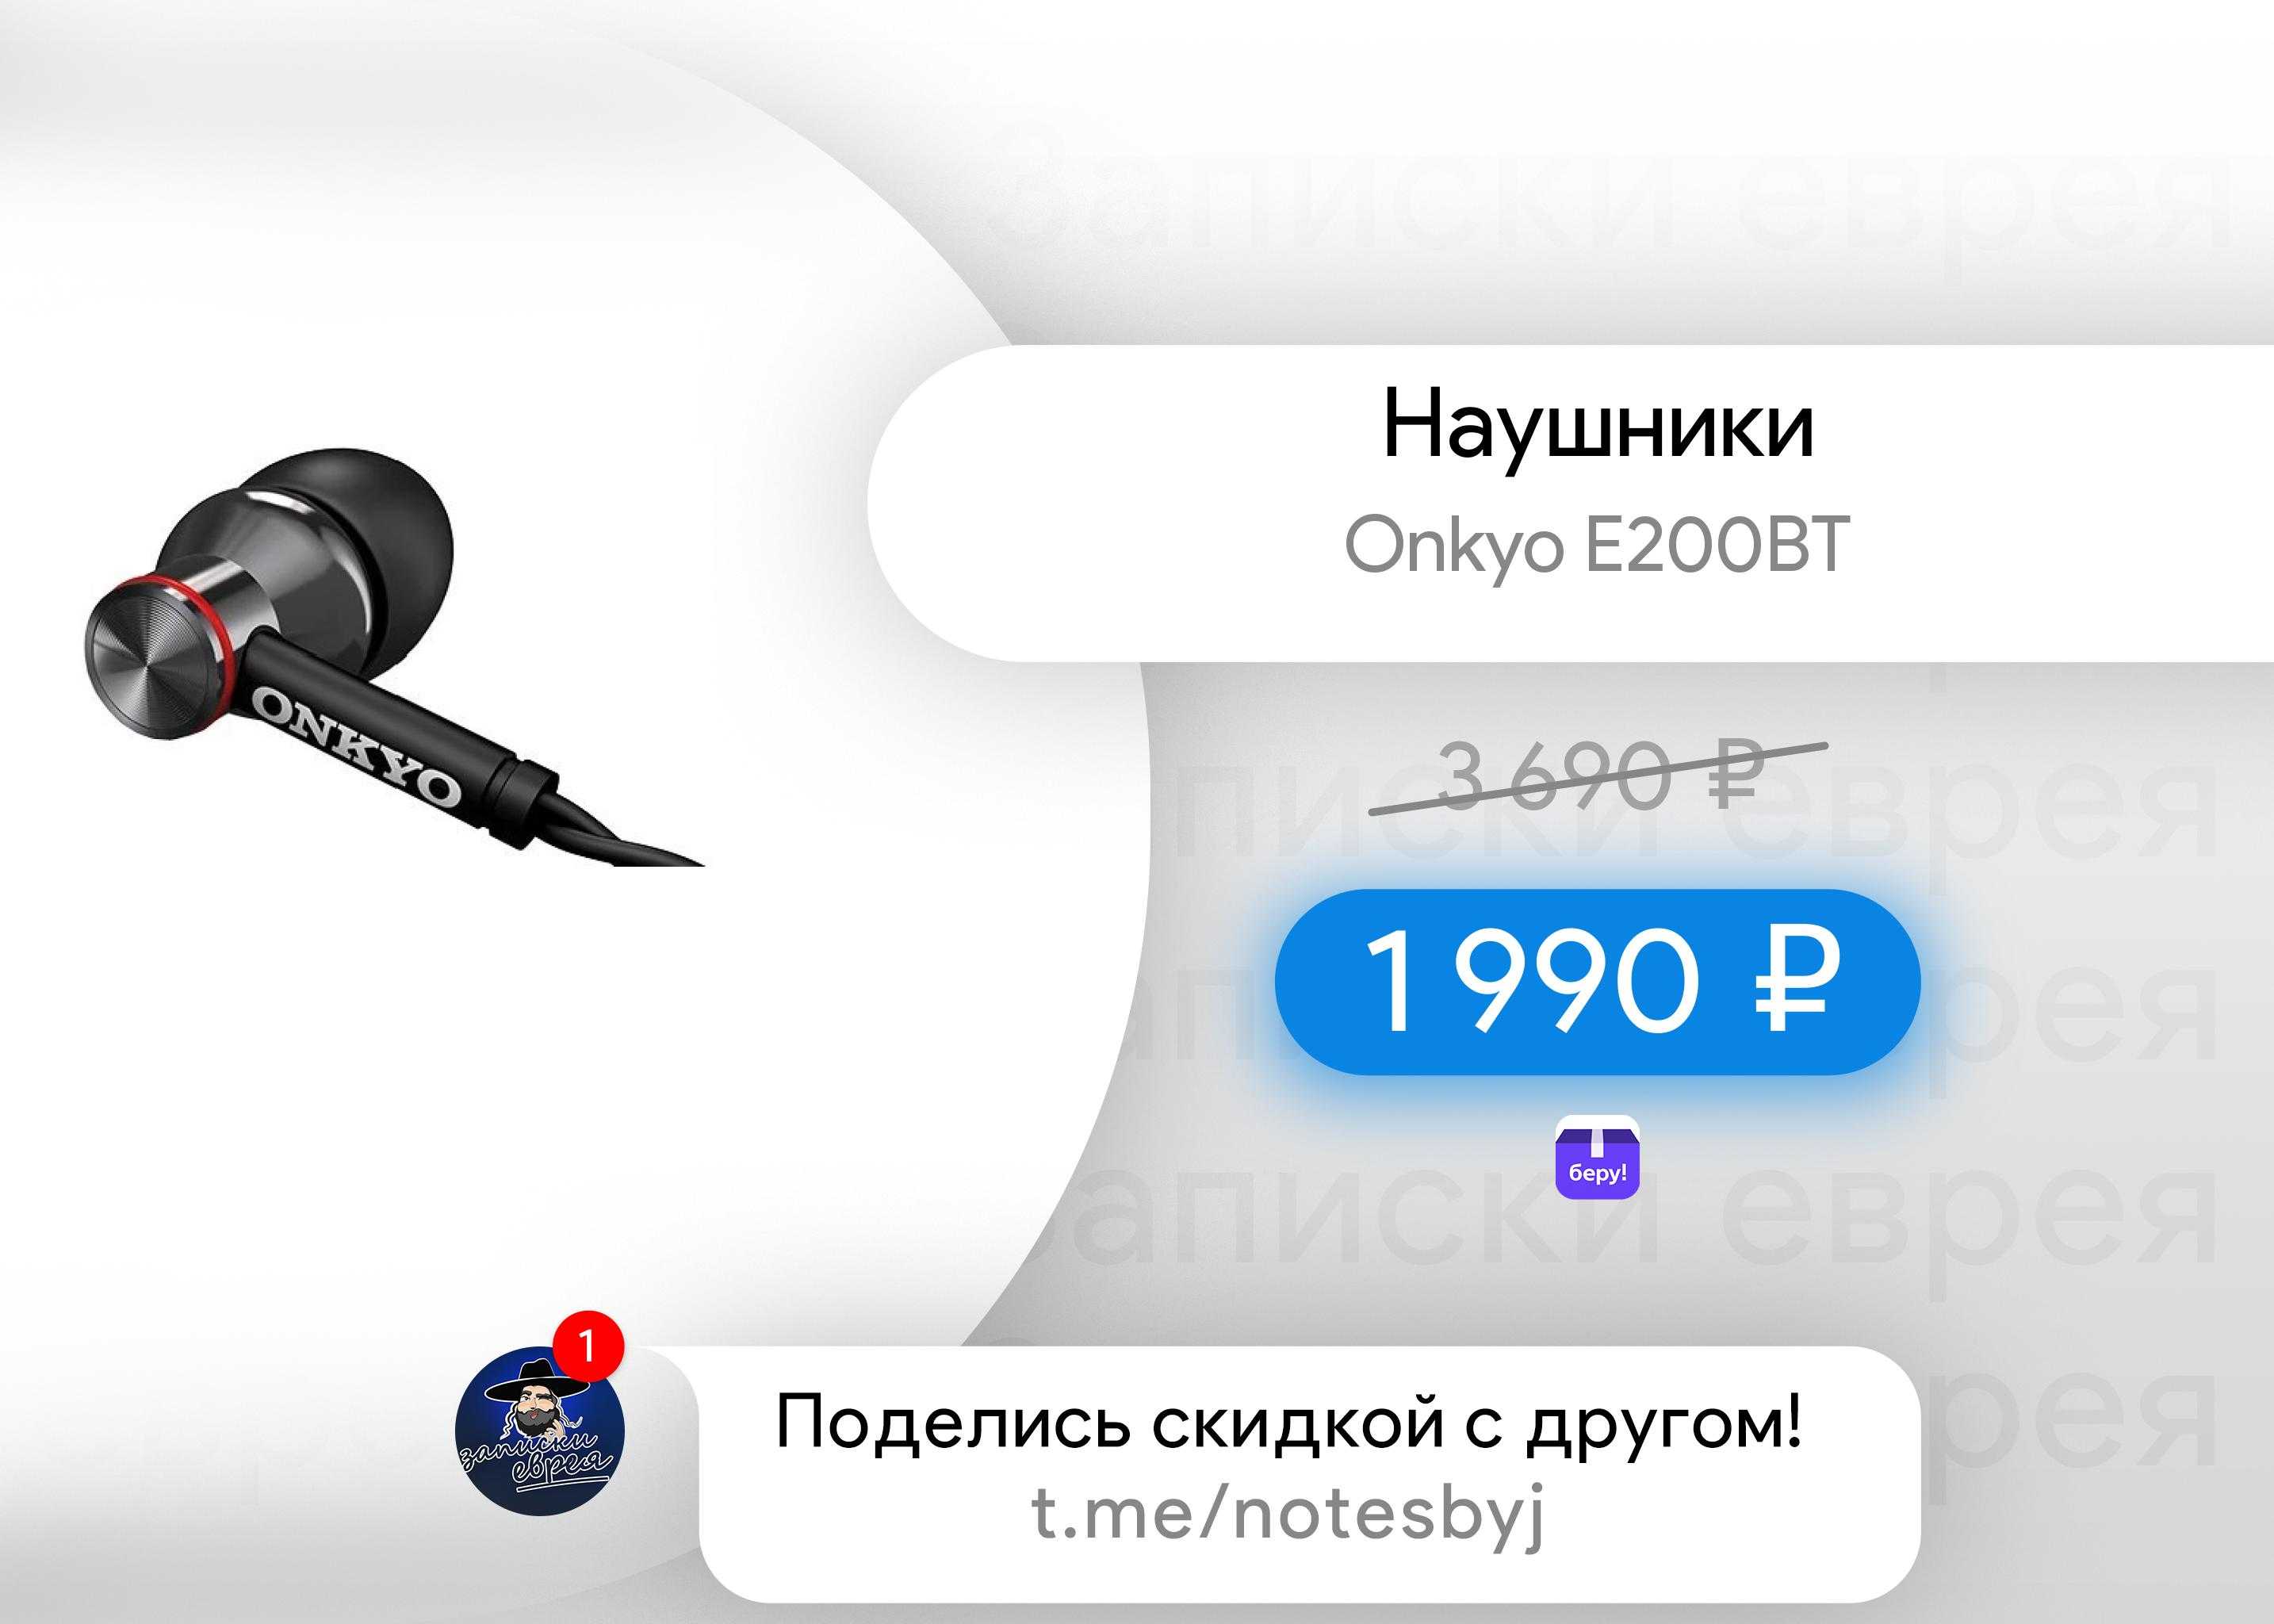 Onkyo e700m купить по акционной цене , отзывы и обзоры.